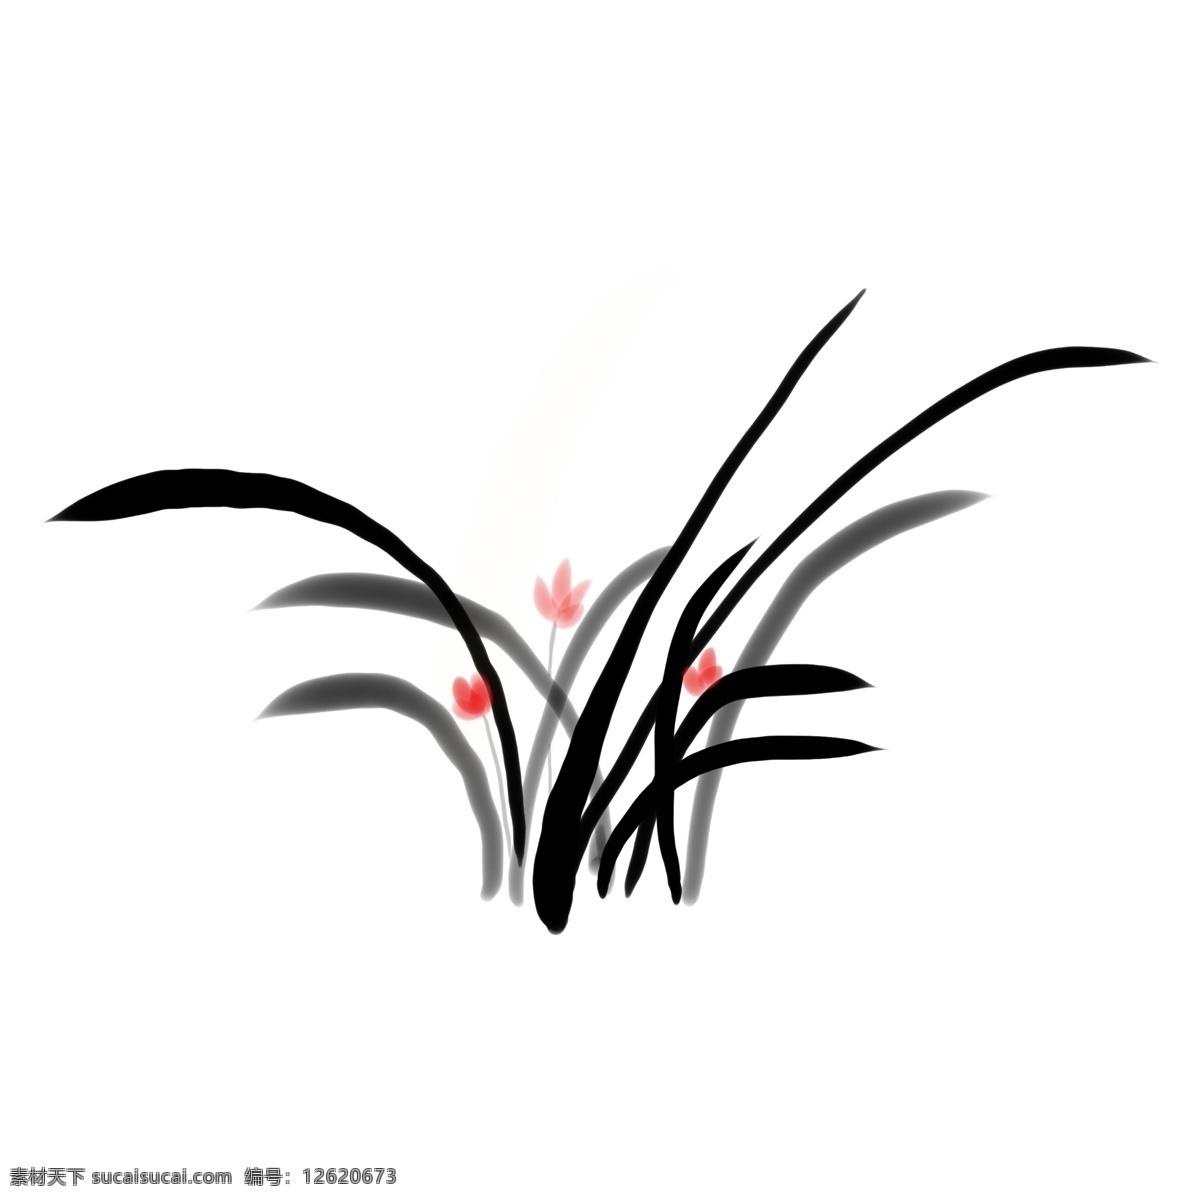 中国 风 手绘 水墨 兰花 植物 古风 水墨画 装饰